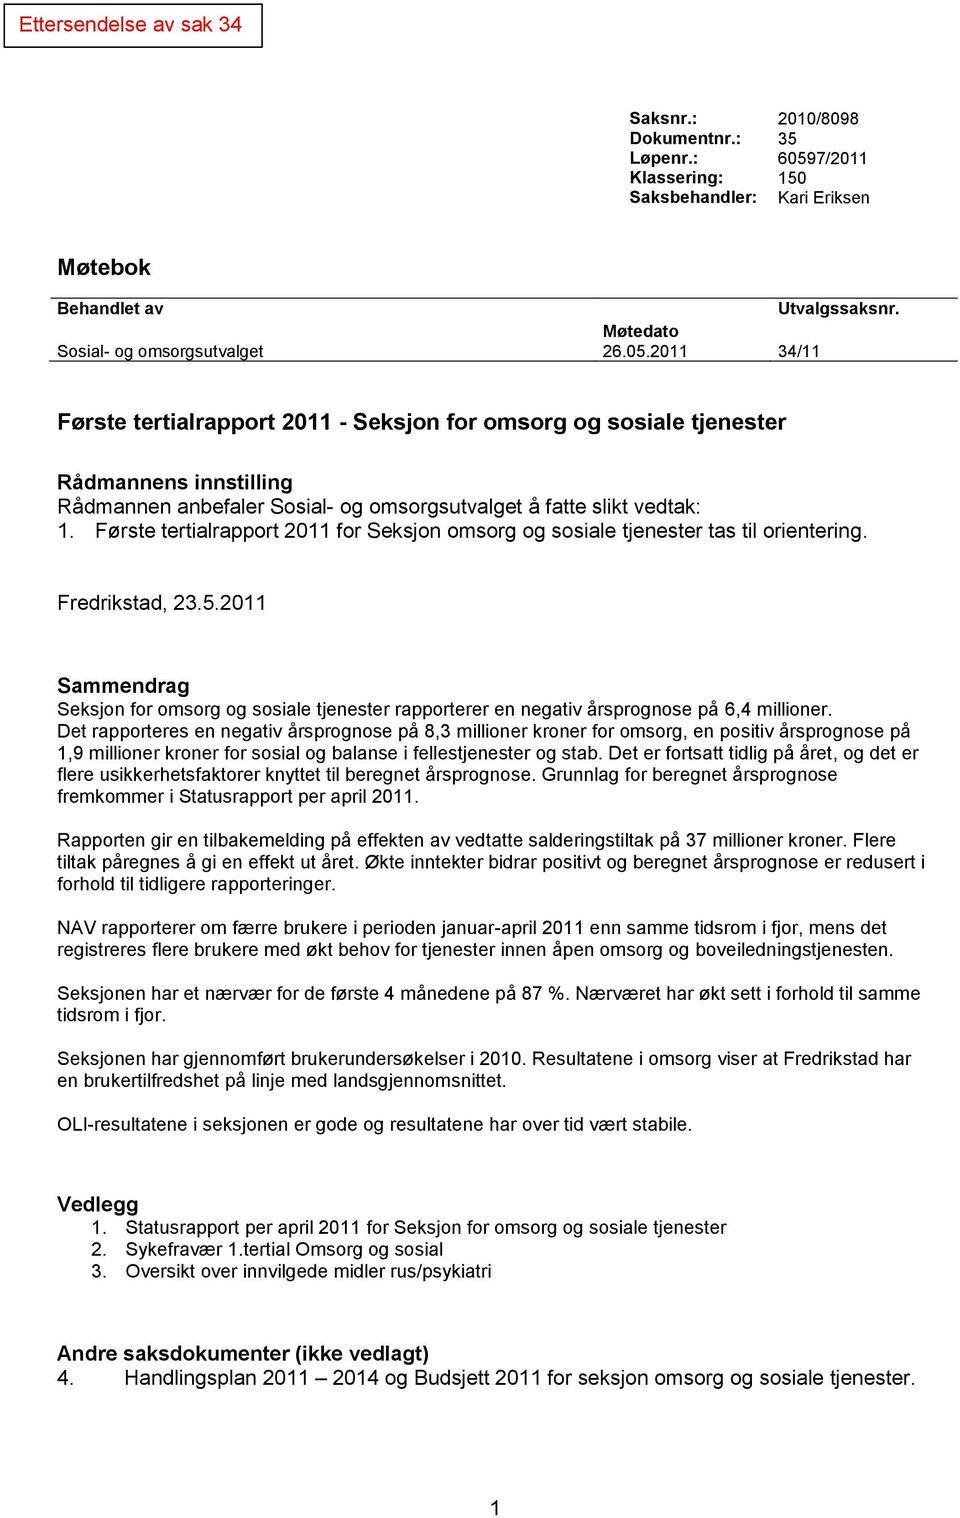 Første tertialrapport 2011 for Seksjon omsorg og sosiale tjenester tas til orientering. Fredrikstad, 23.5.